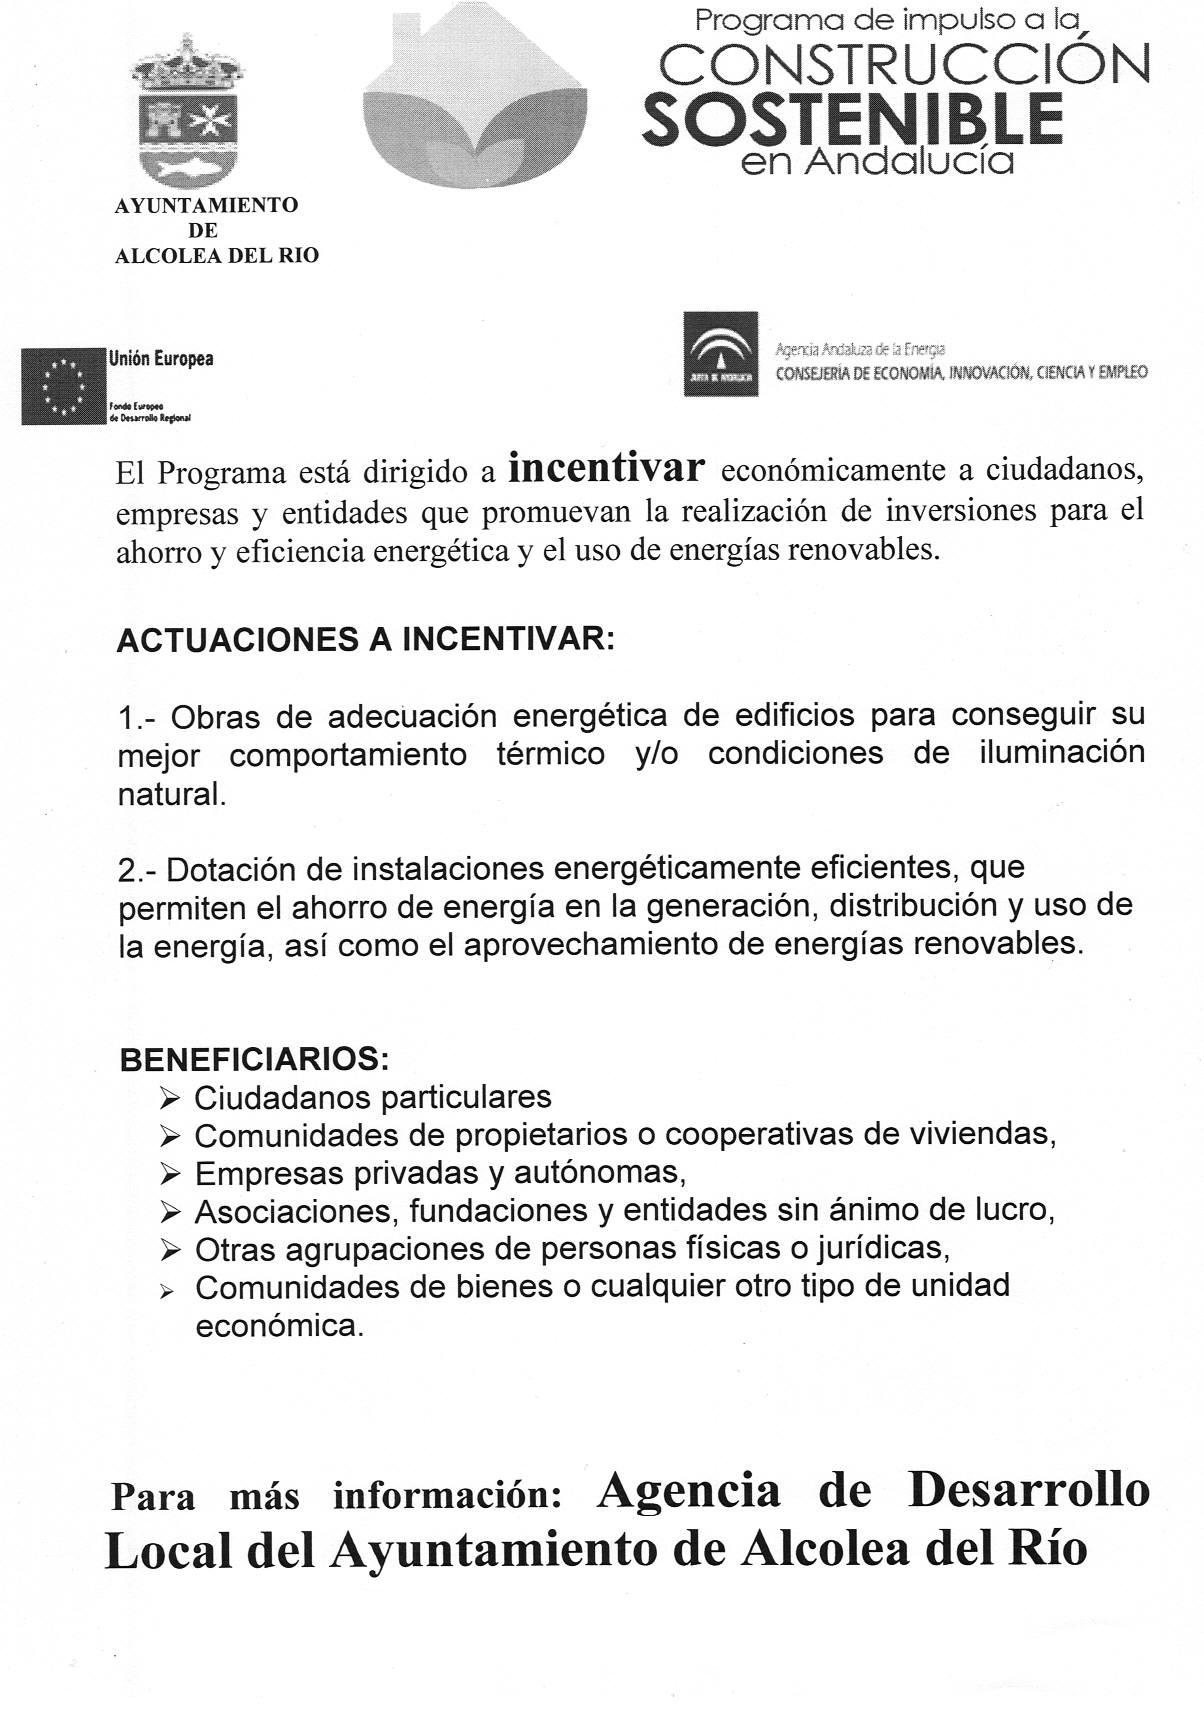 PROGRMA CONSTRUCCIÓN SOSTENIBLE-page-001